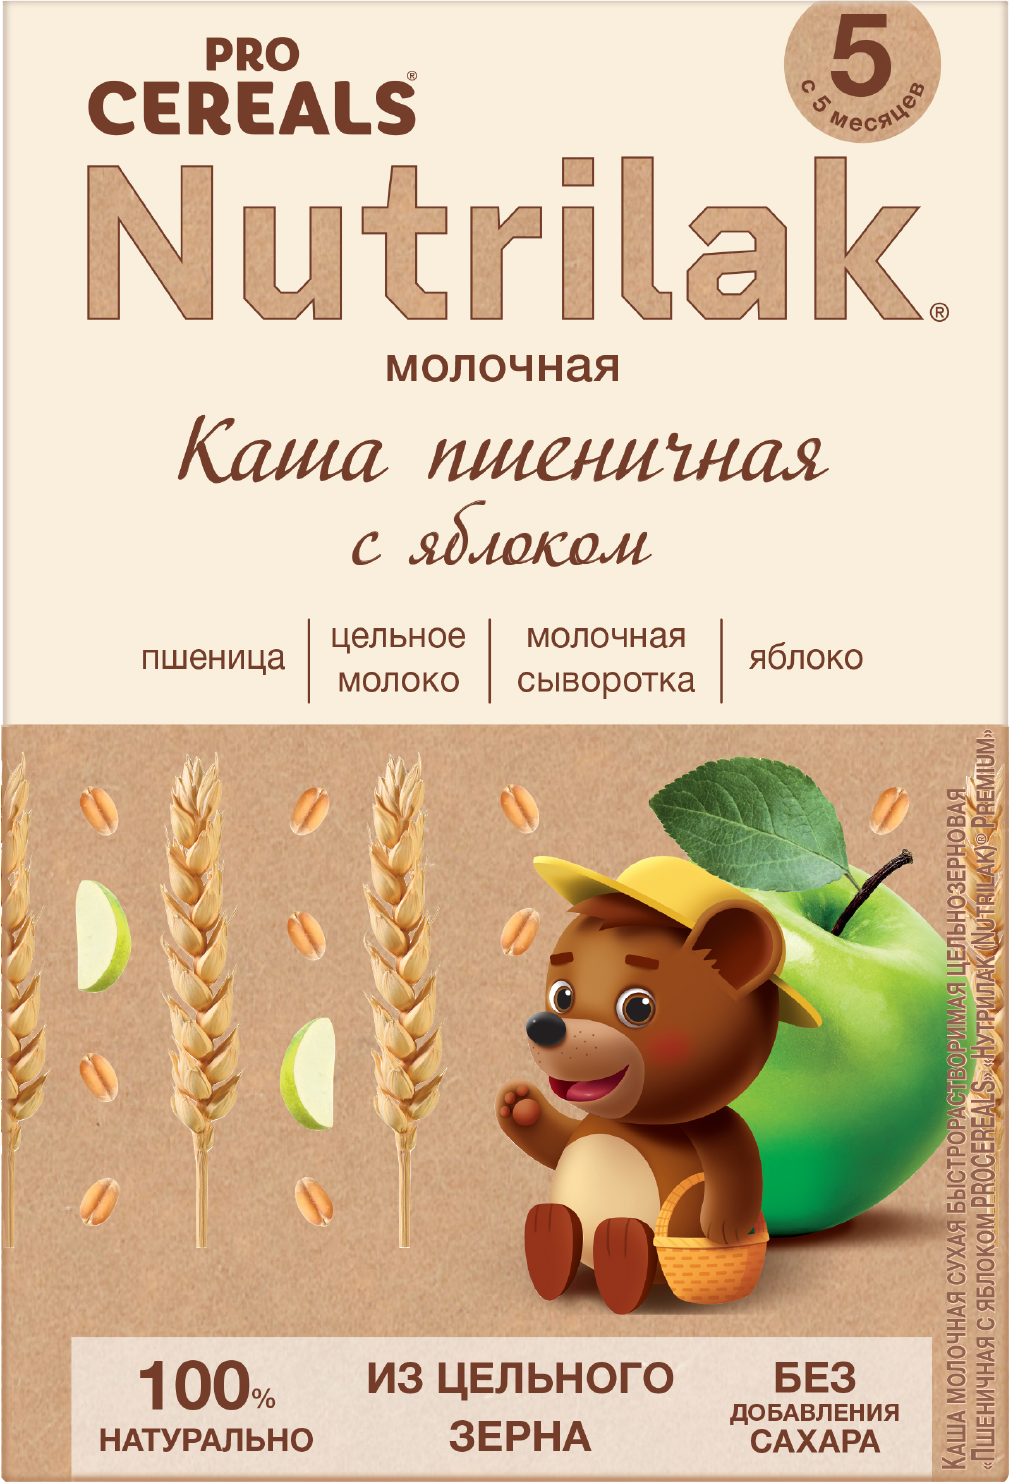 Каша пшеничная с яблоком Nutrilak Premium Pro Cereals цельнозерновая молочная, 200гр - фото №13